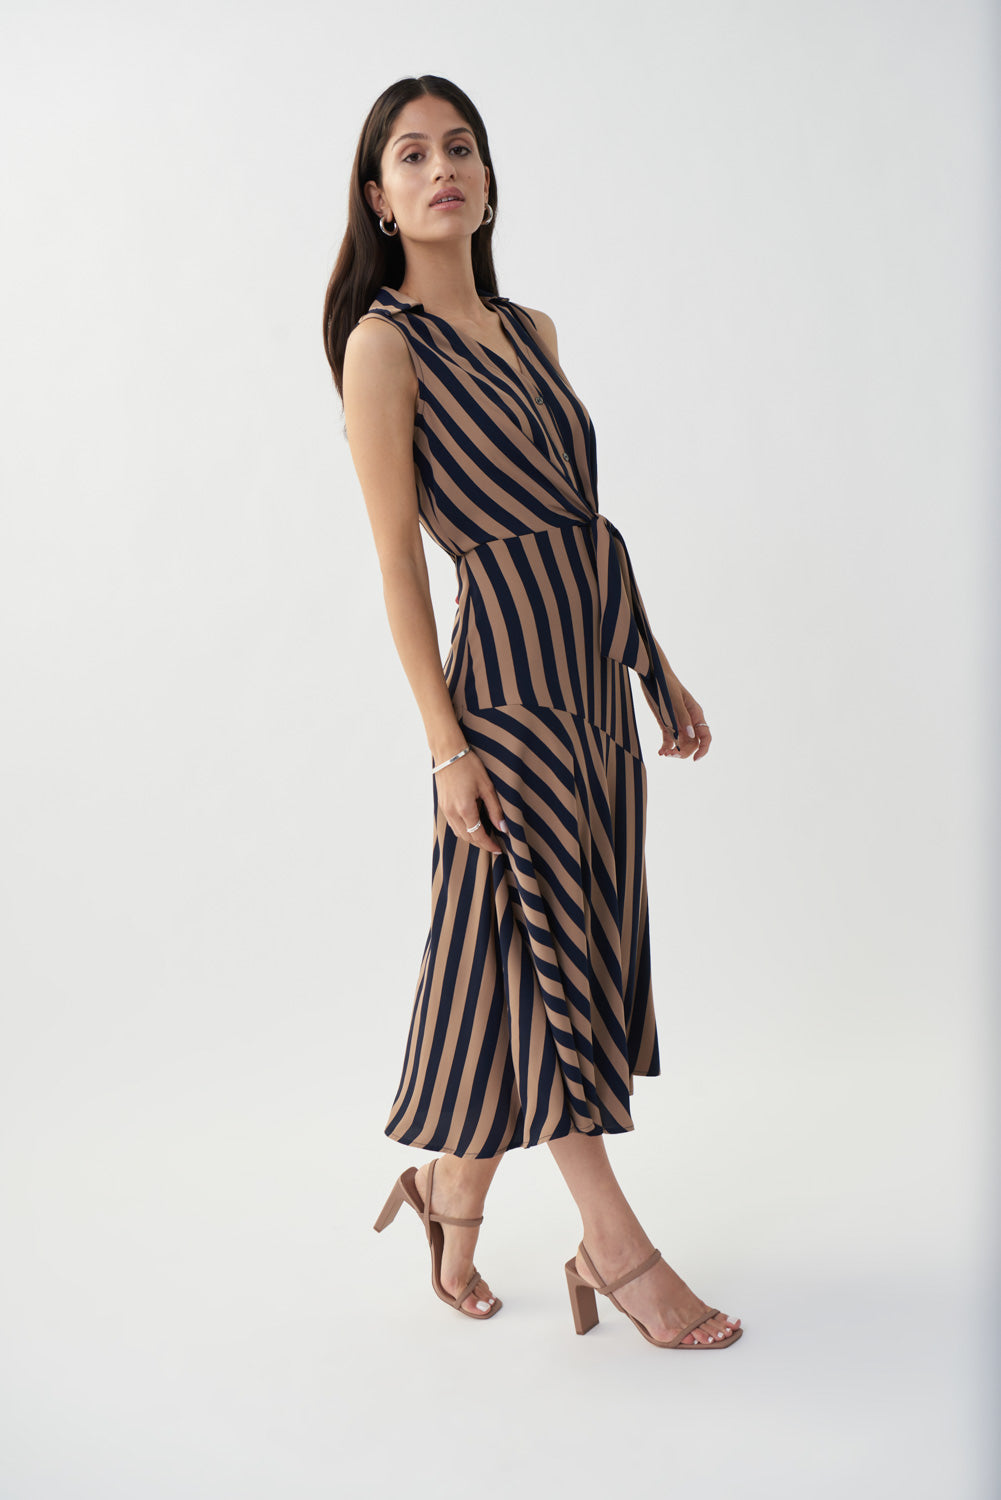 Joseph Ribkoff Midnight Blue-Beige Striped Fit & Flare Dress Style 222207